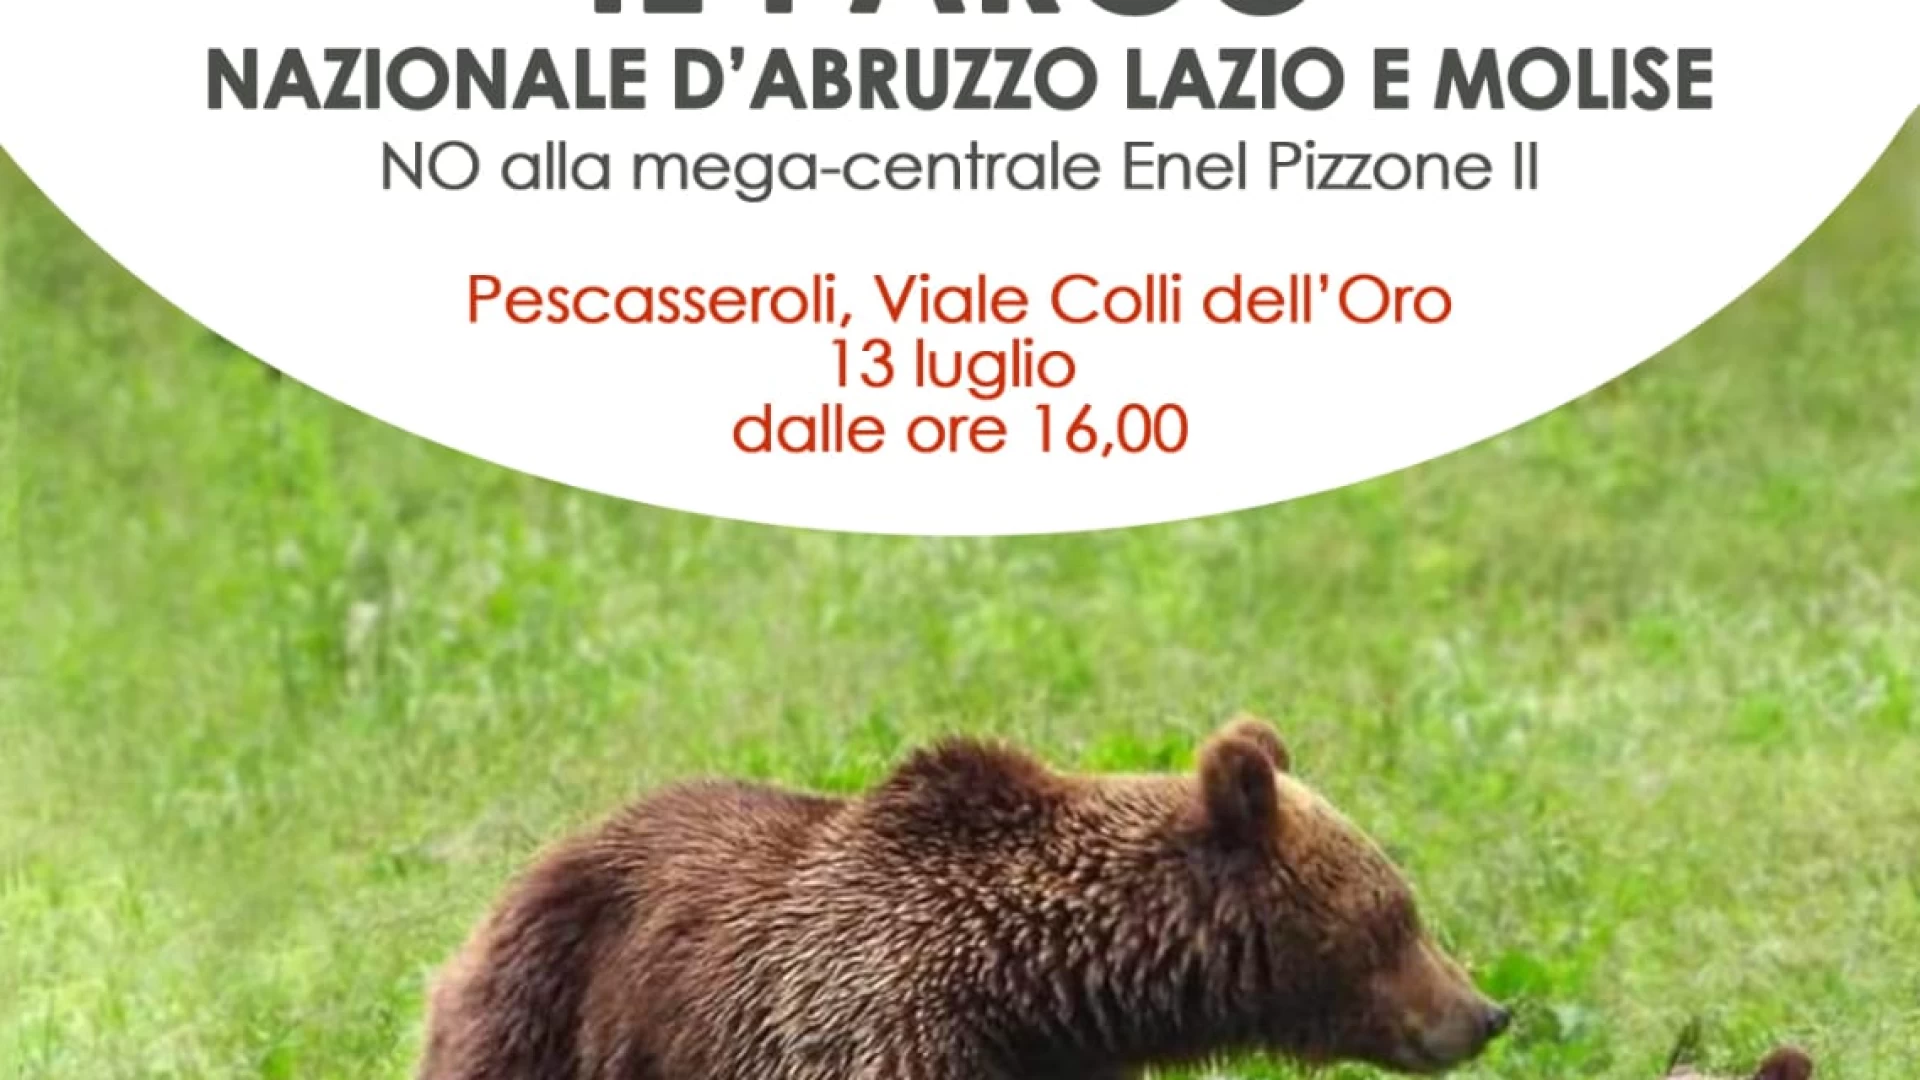 PIZZONE II, il fronte del “No” passa al contrattacco: il 13 luglio sit – in a Pescasseroli in difesa del Parco Nazionale d’Abruzzo, Lazio e Molise.